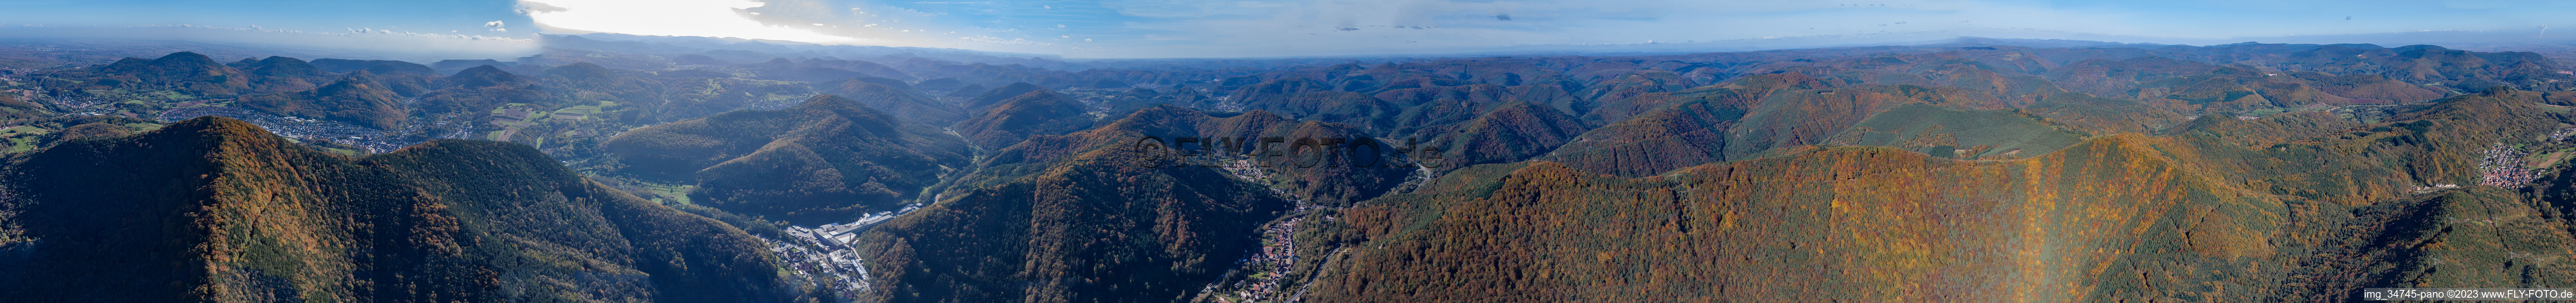 Luftbild von Pfalzpanorama Queichtal nach Westen in Rinnthal im Bundesland Rheinland-Pfalz, Deutschland